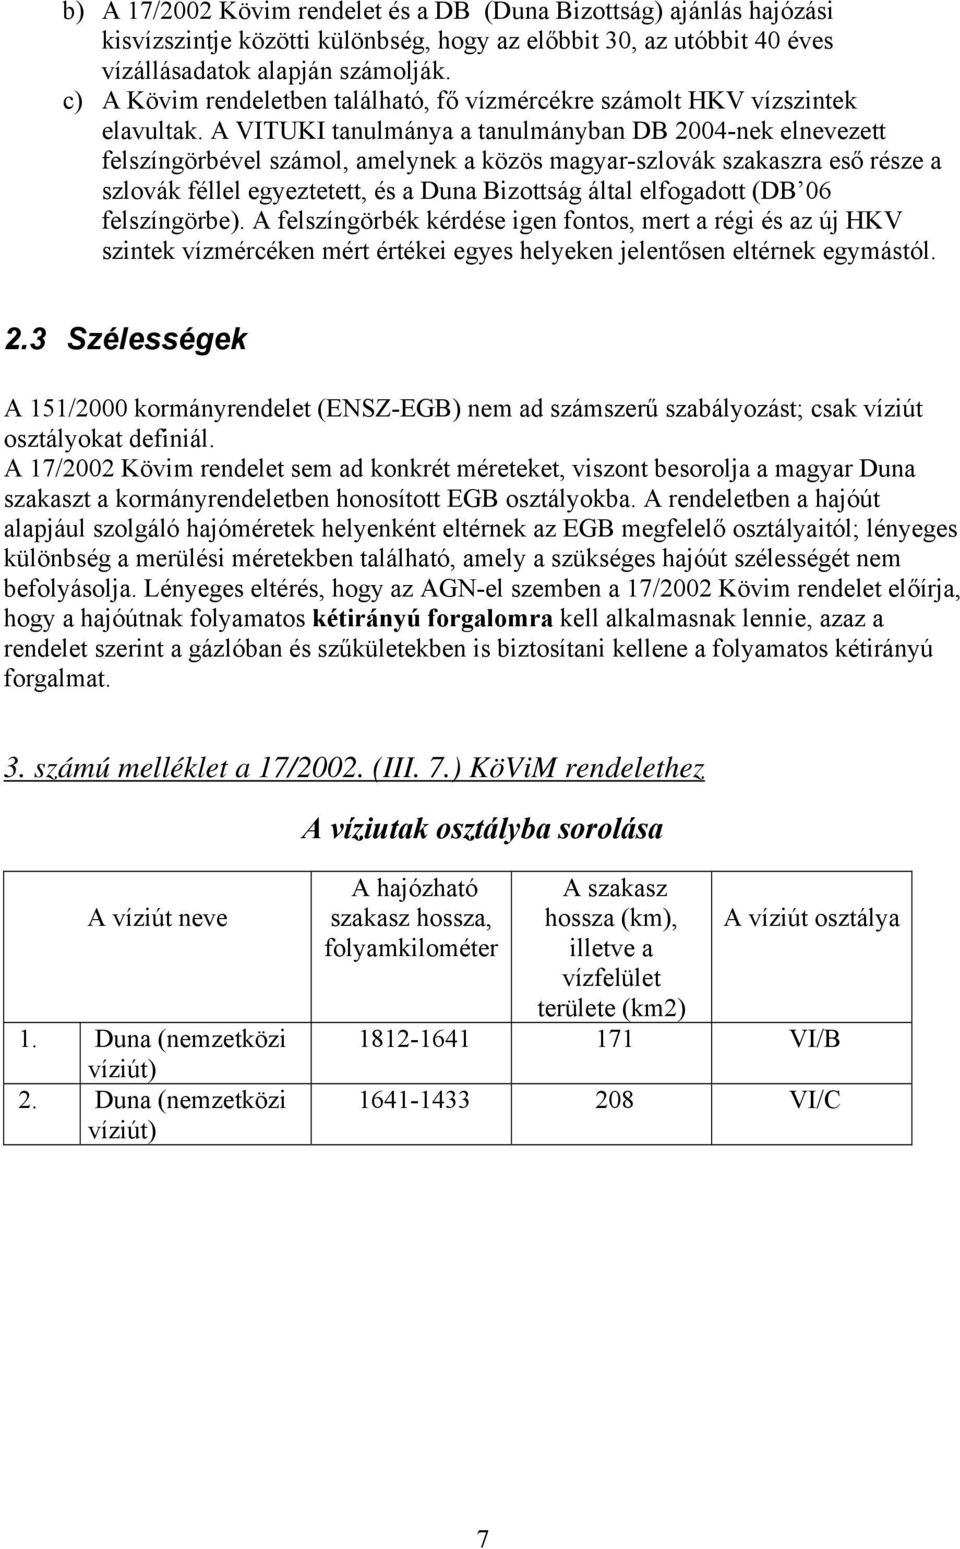 A VITUKI tanulmánya a tanulmányban DB 2004-nek elnevezett felszíngörbével számol, amelynek a közös magyar-szlovák szakaszra eső része a szlovák féllel egyeztetett, és a Duna Bizottság által